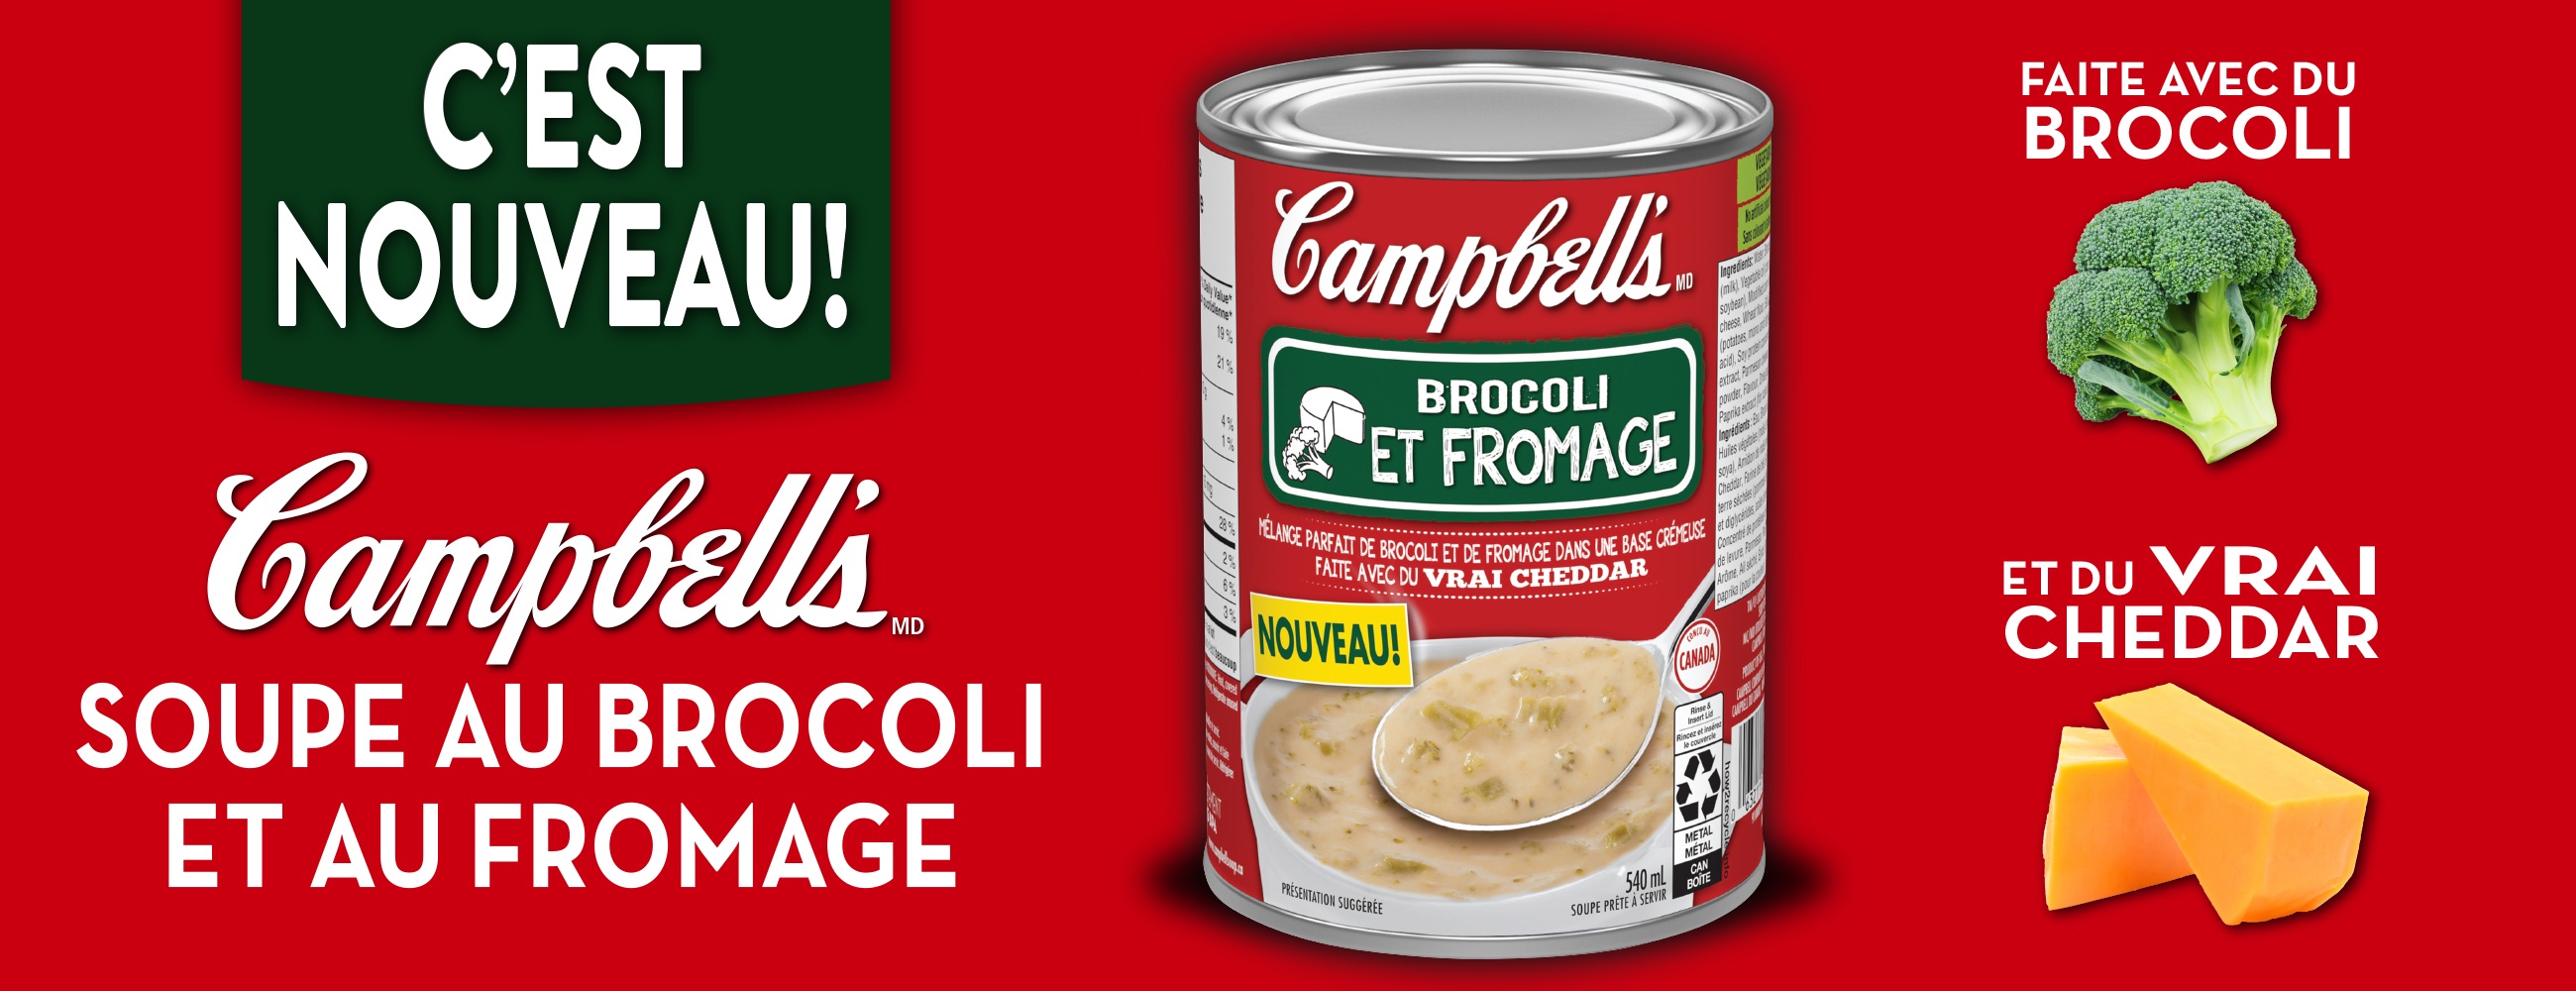 C'est nouveau! Campbell's soupe au broccoli et au fromage. Faite avec du brocoli et du vrai cheddar.